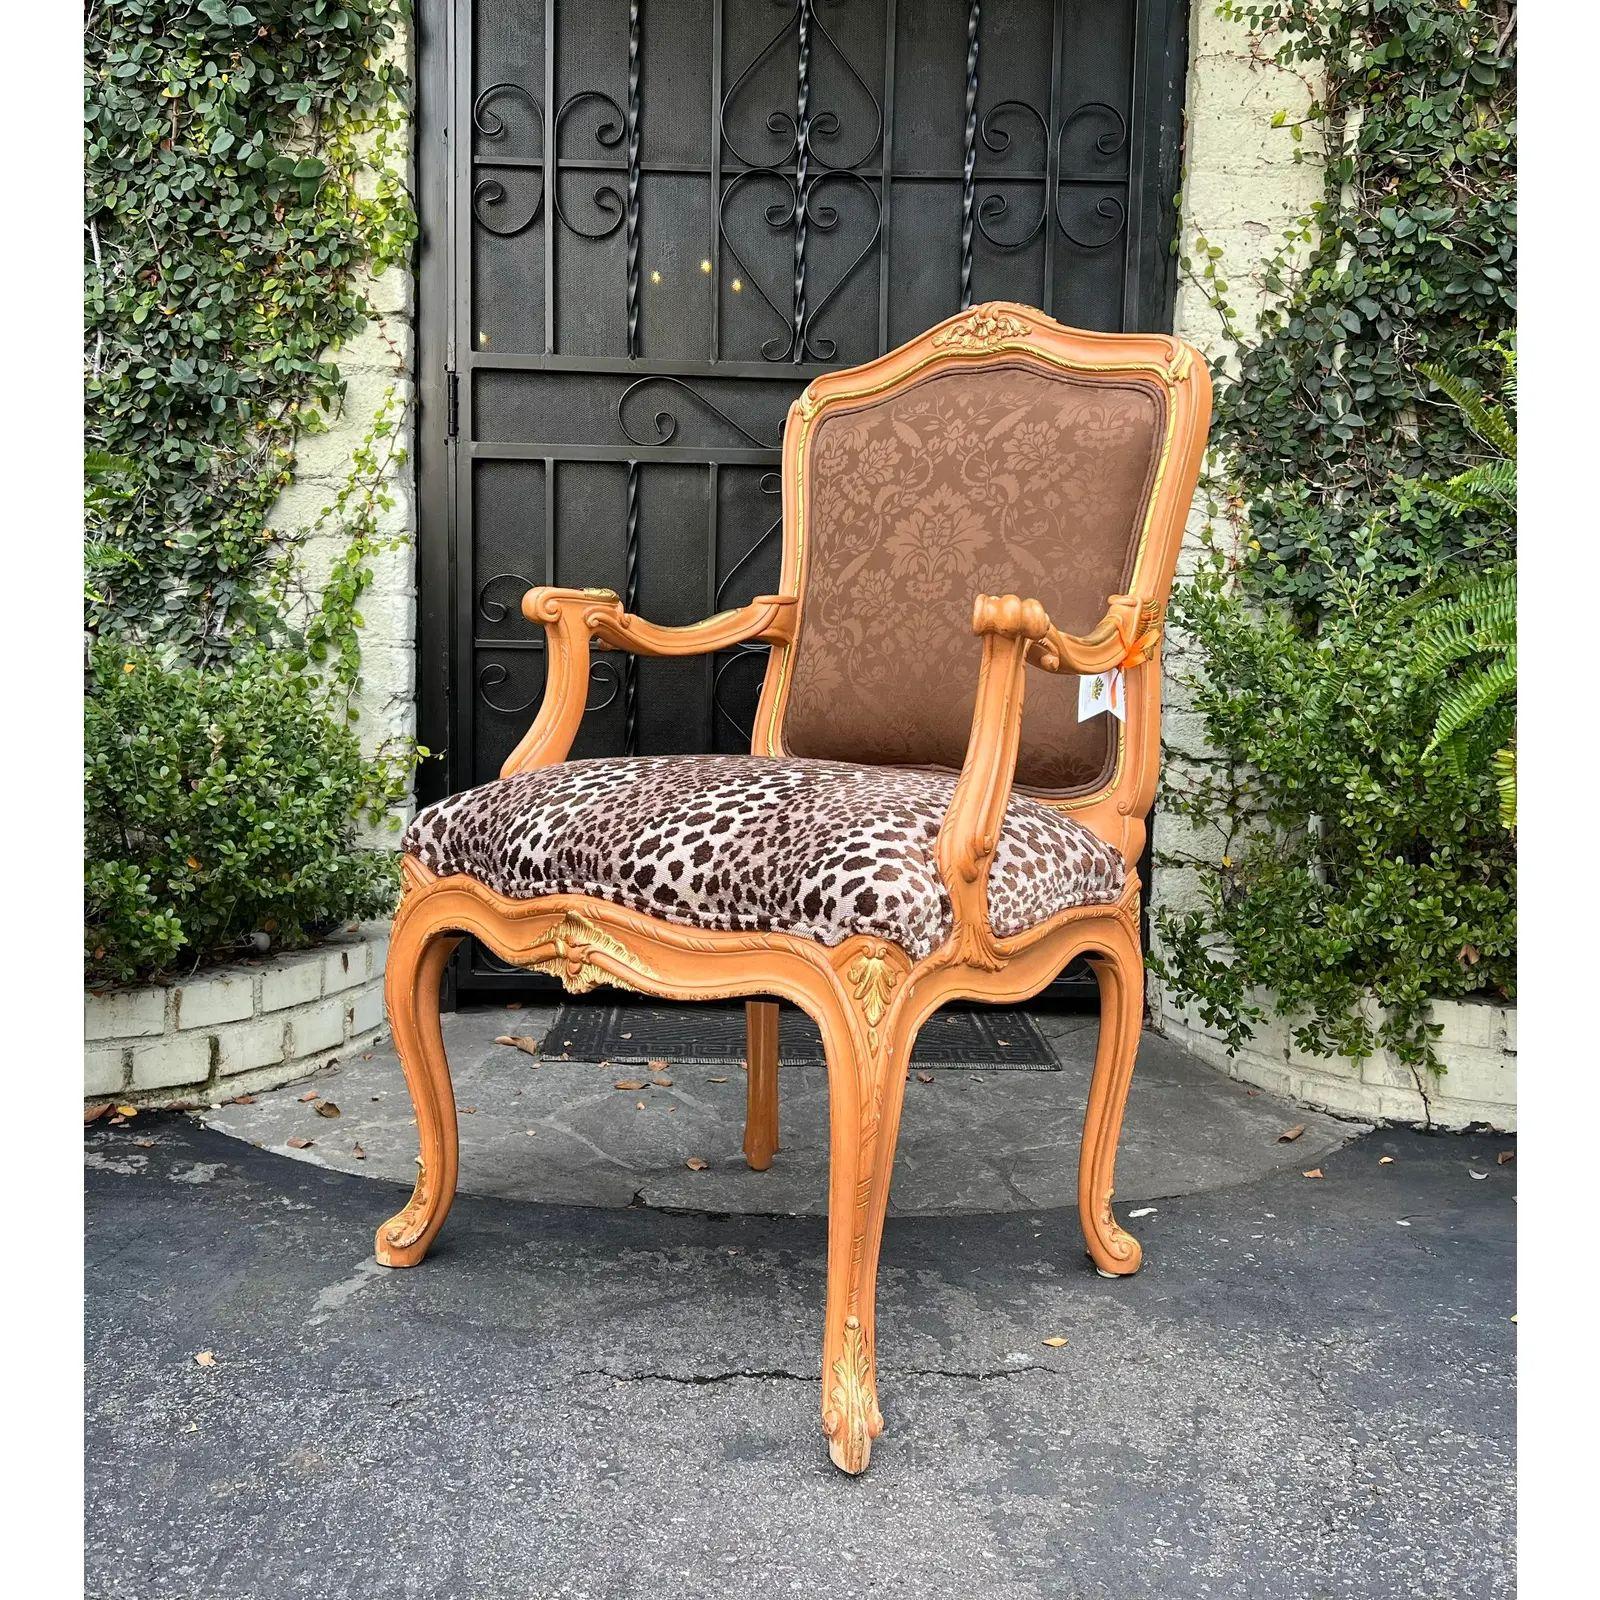 JEDEN PREIS!
Louis XV Stil Louis Mittman Fauteuil Sessel. Er ist mit einer Kombination aus Scalamandre-Damast und Clarence-House-geschnittenem Geparden-Samt gepolstert. Dieses Angebot ist für 1 Stuhl, aber wir haben tatsächlich 2